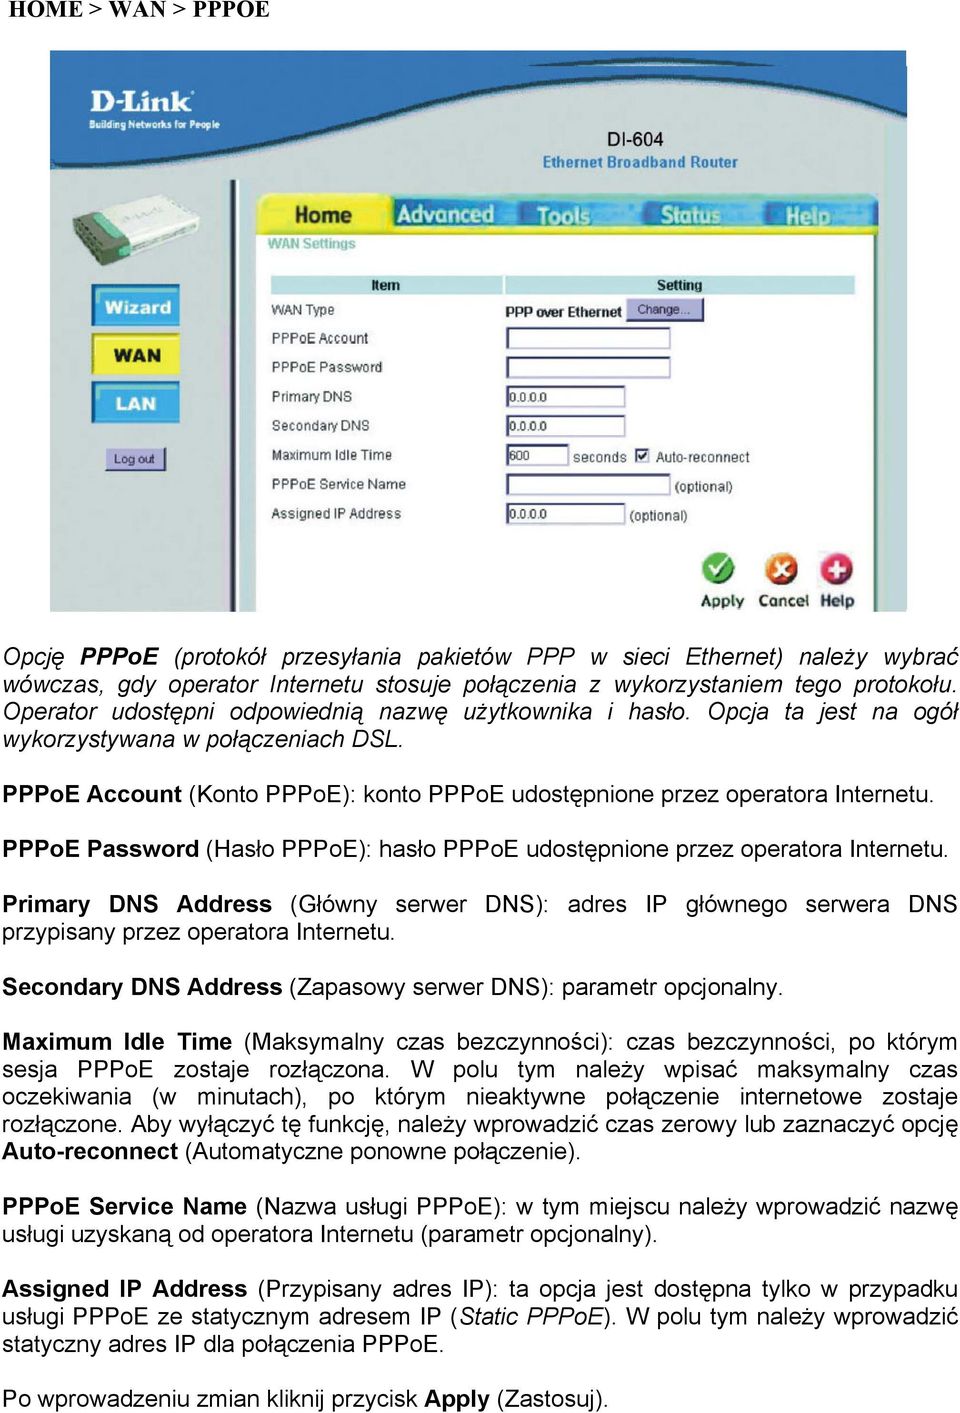 PPPoE Password (Hasło PPPoE): hasło PPPoE udostępnione przez operatora Internetu. Primary DNS Address (Główny serwer DNS): adres IP głównego serwera DNS przypisany przez operatora Internetu.